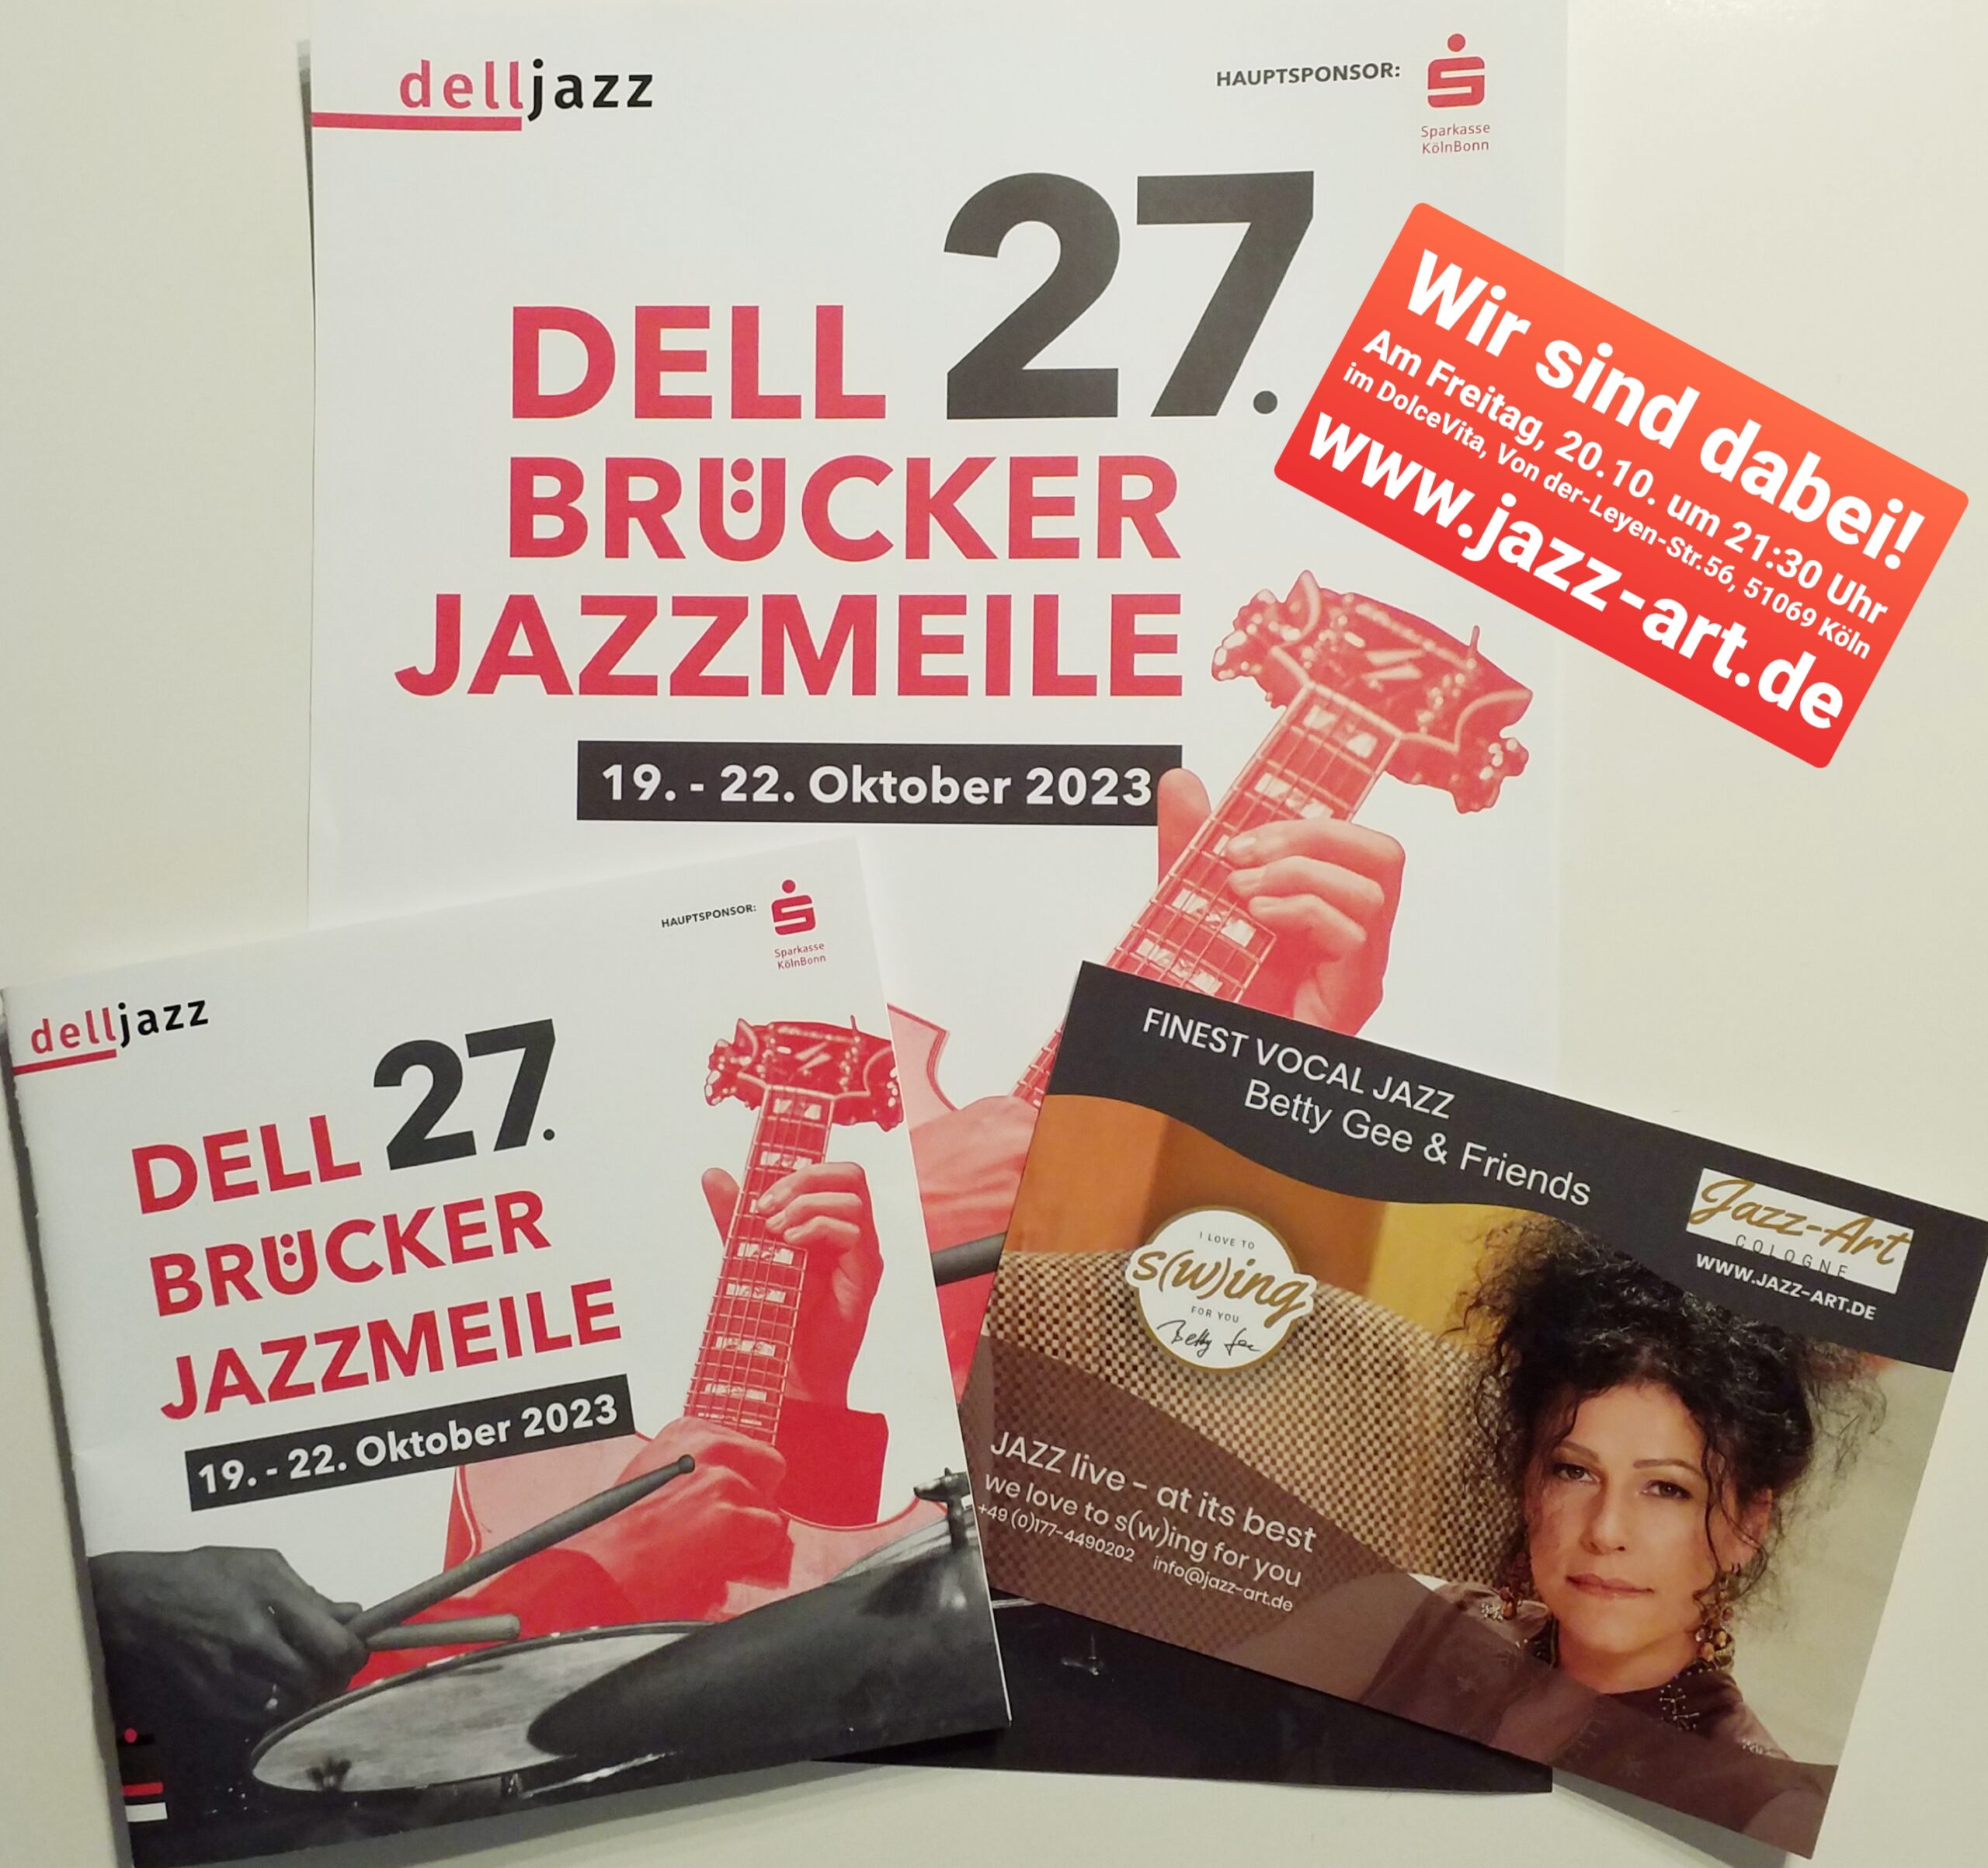 Wir sind dabei! Betty Gee & Friends — 27. Dellbrücker Jazzmeile am 20.10.2023 — Swing, Blues, Bebop, Bossa & Soul